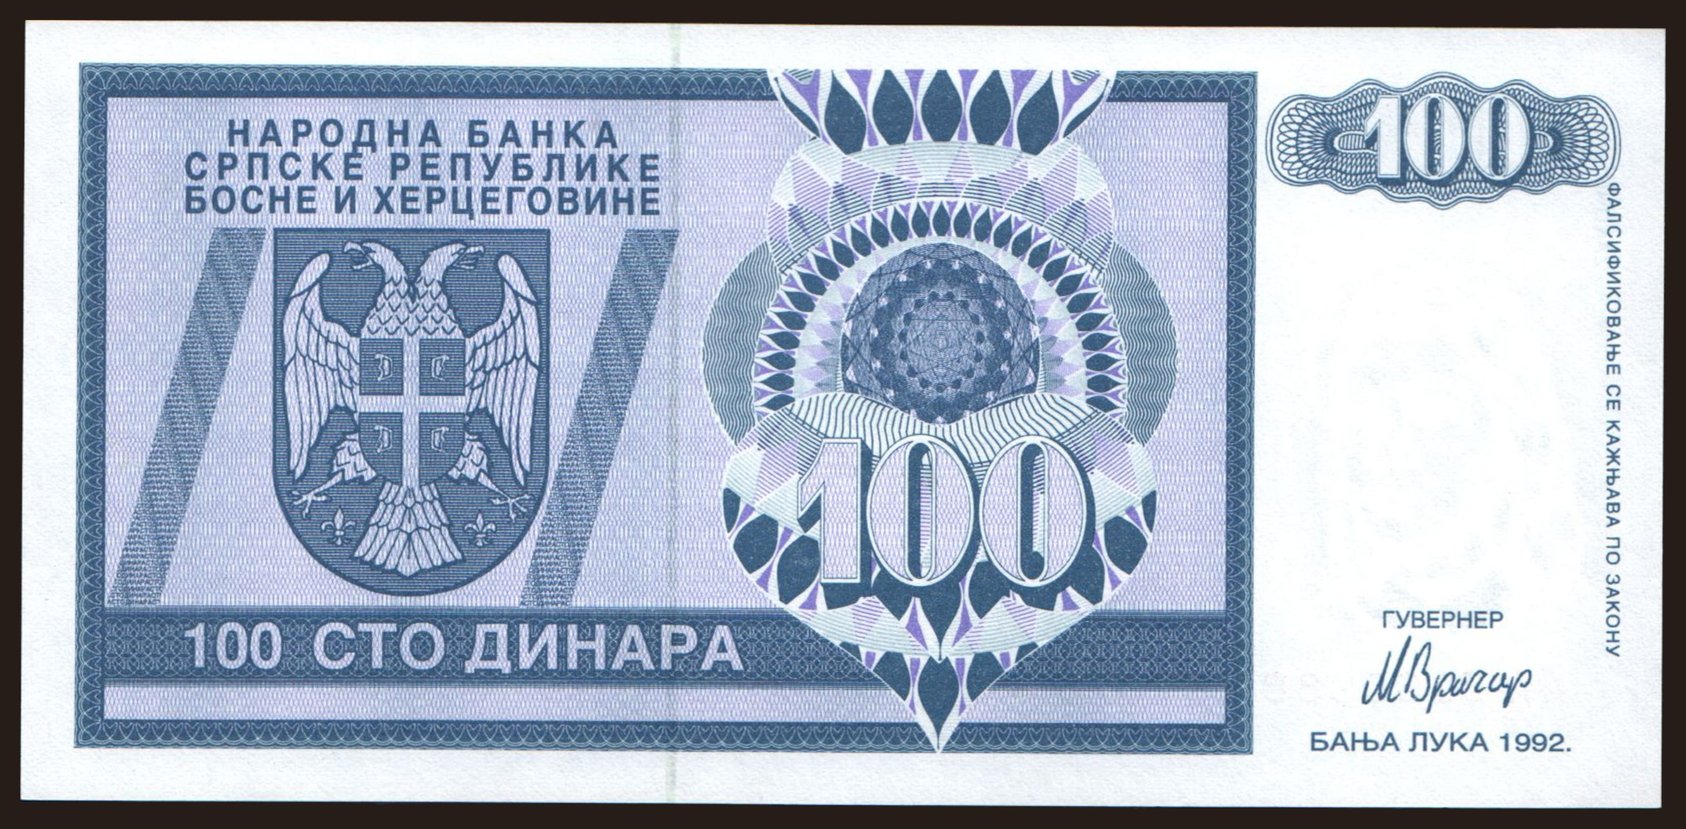 RSBH, 100 dinara, 1992